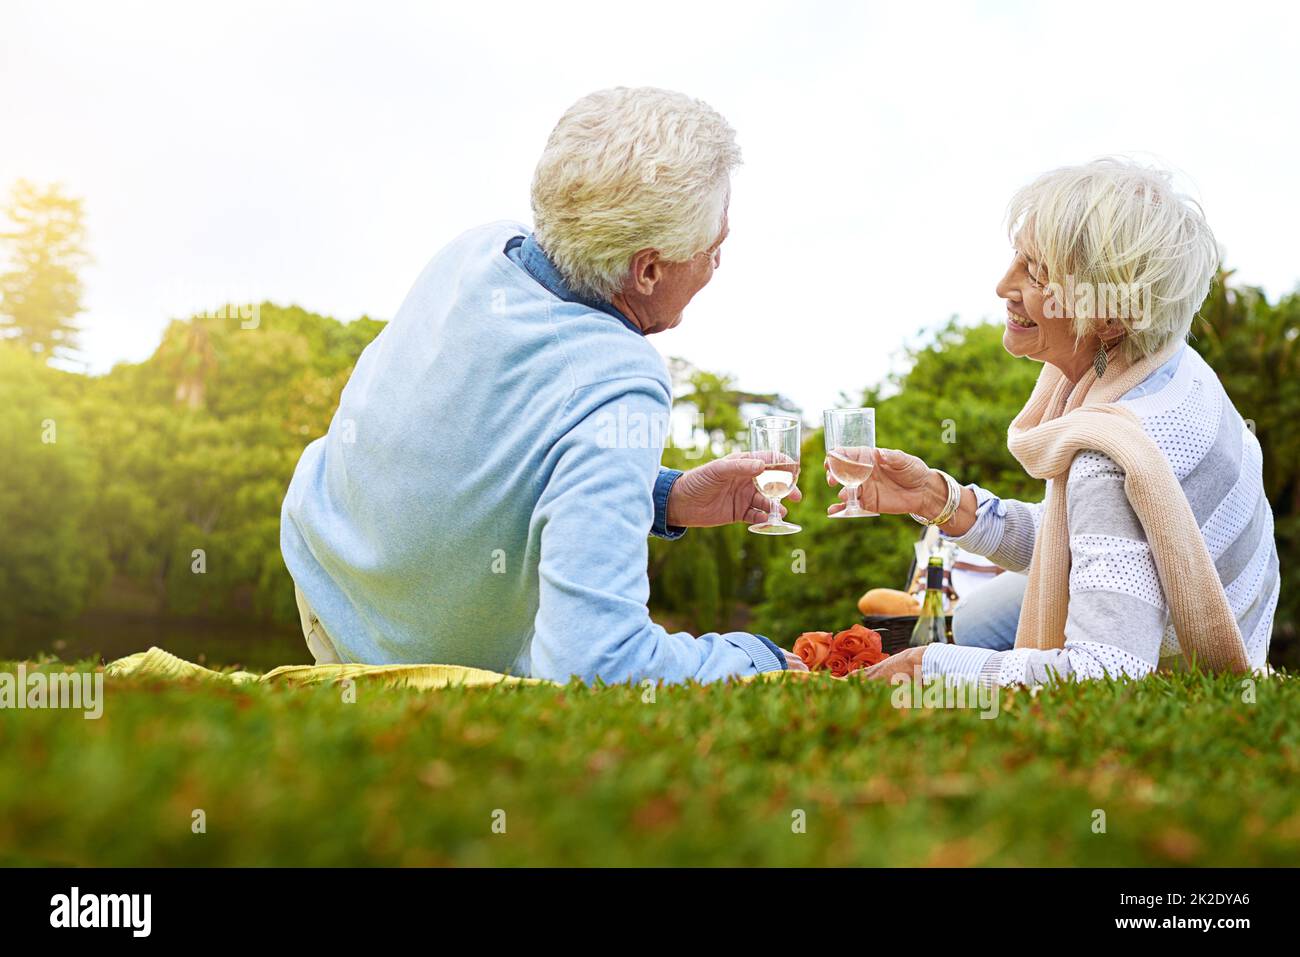 Pique-nique dans le parc. Photo d'un couple senior en train de pique-niquer dans un parc. Banque D'Images